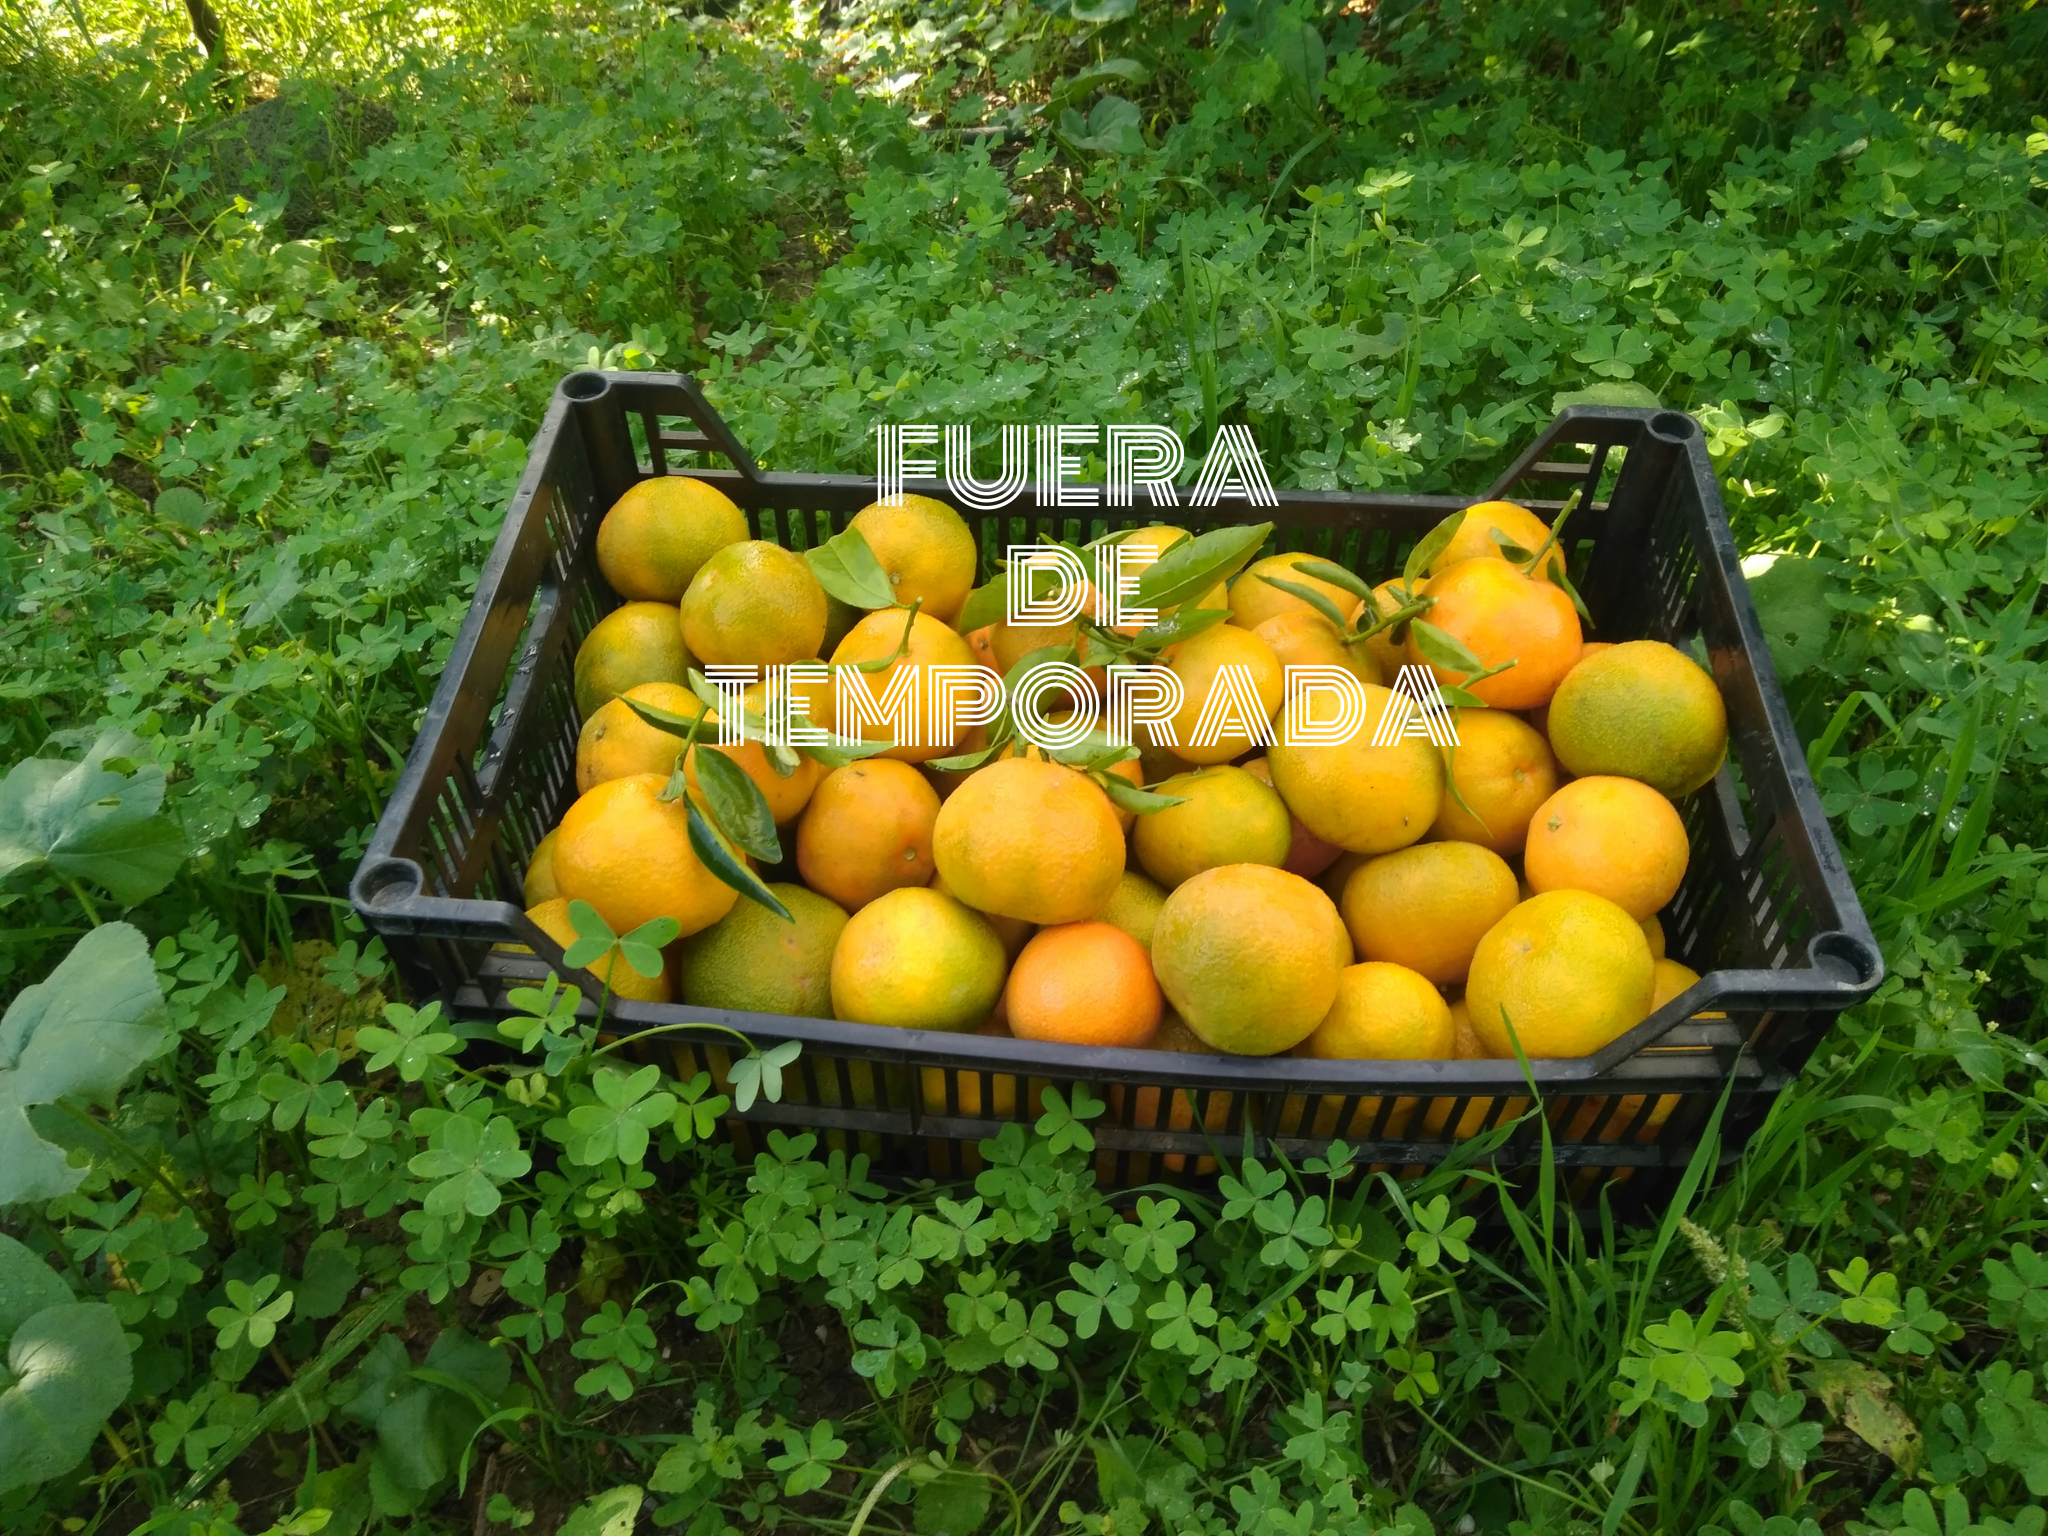 Caja mixta de naranjas y mandarinas 10kg